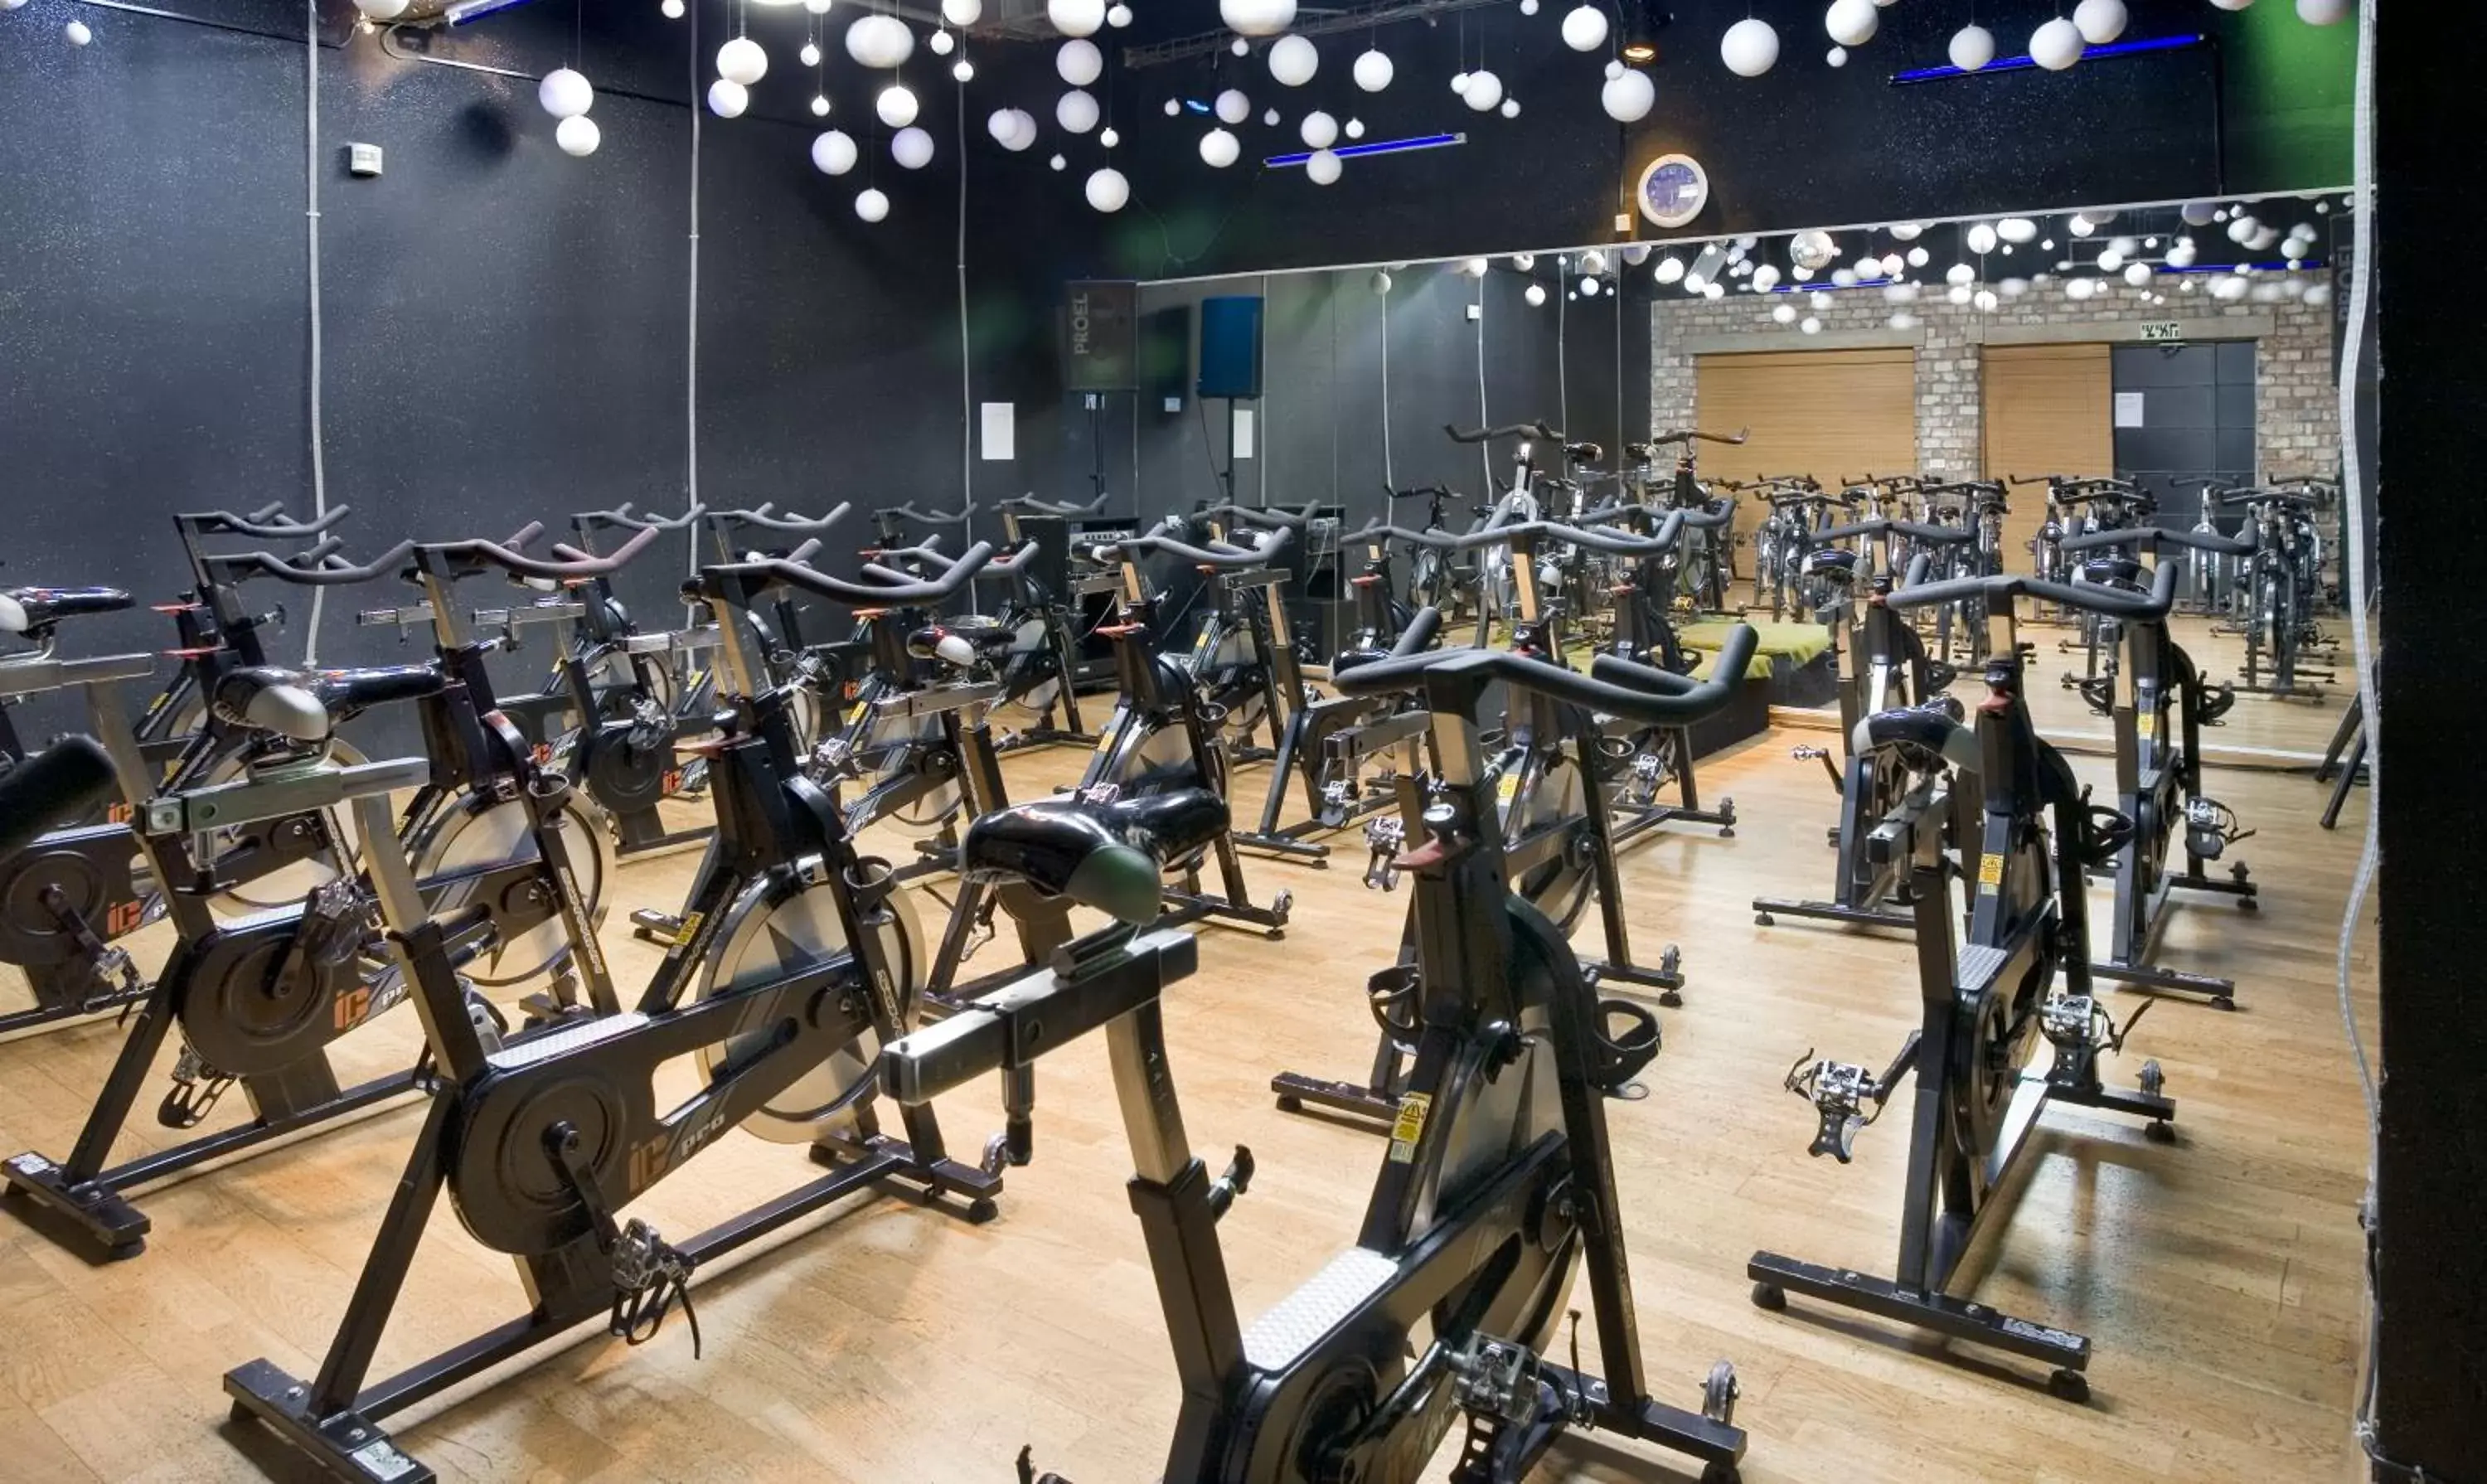 Fitness centre/facilities, Fitness Center/Facilities in Orchid Tel Aviv